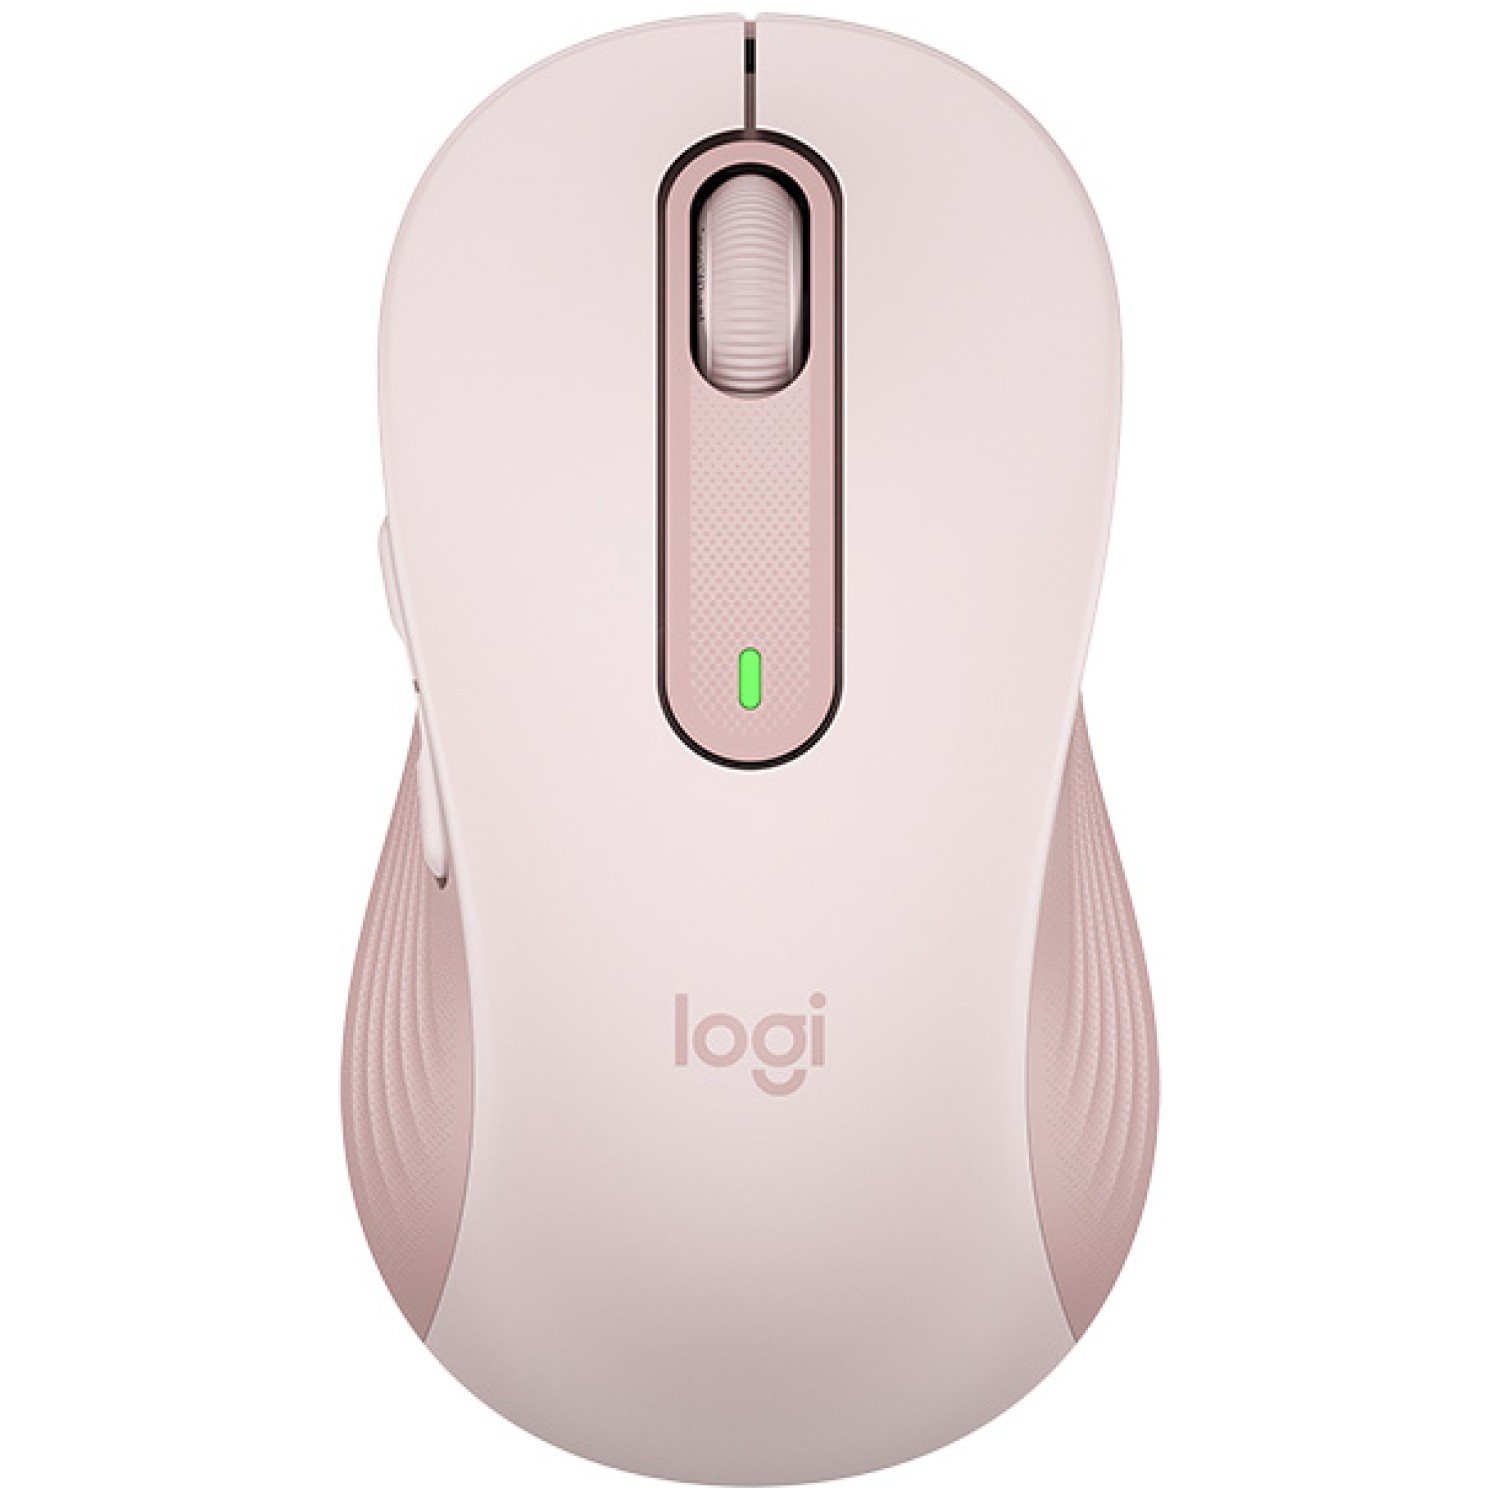 Miš brezžična + Bluetooth Logitech M650 2000DPI Signature velikost L roza (910-006237)